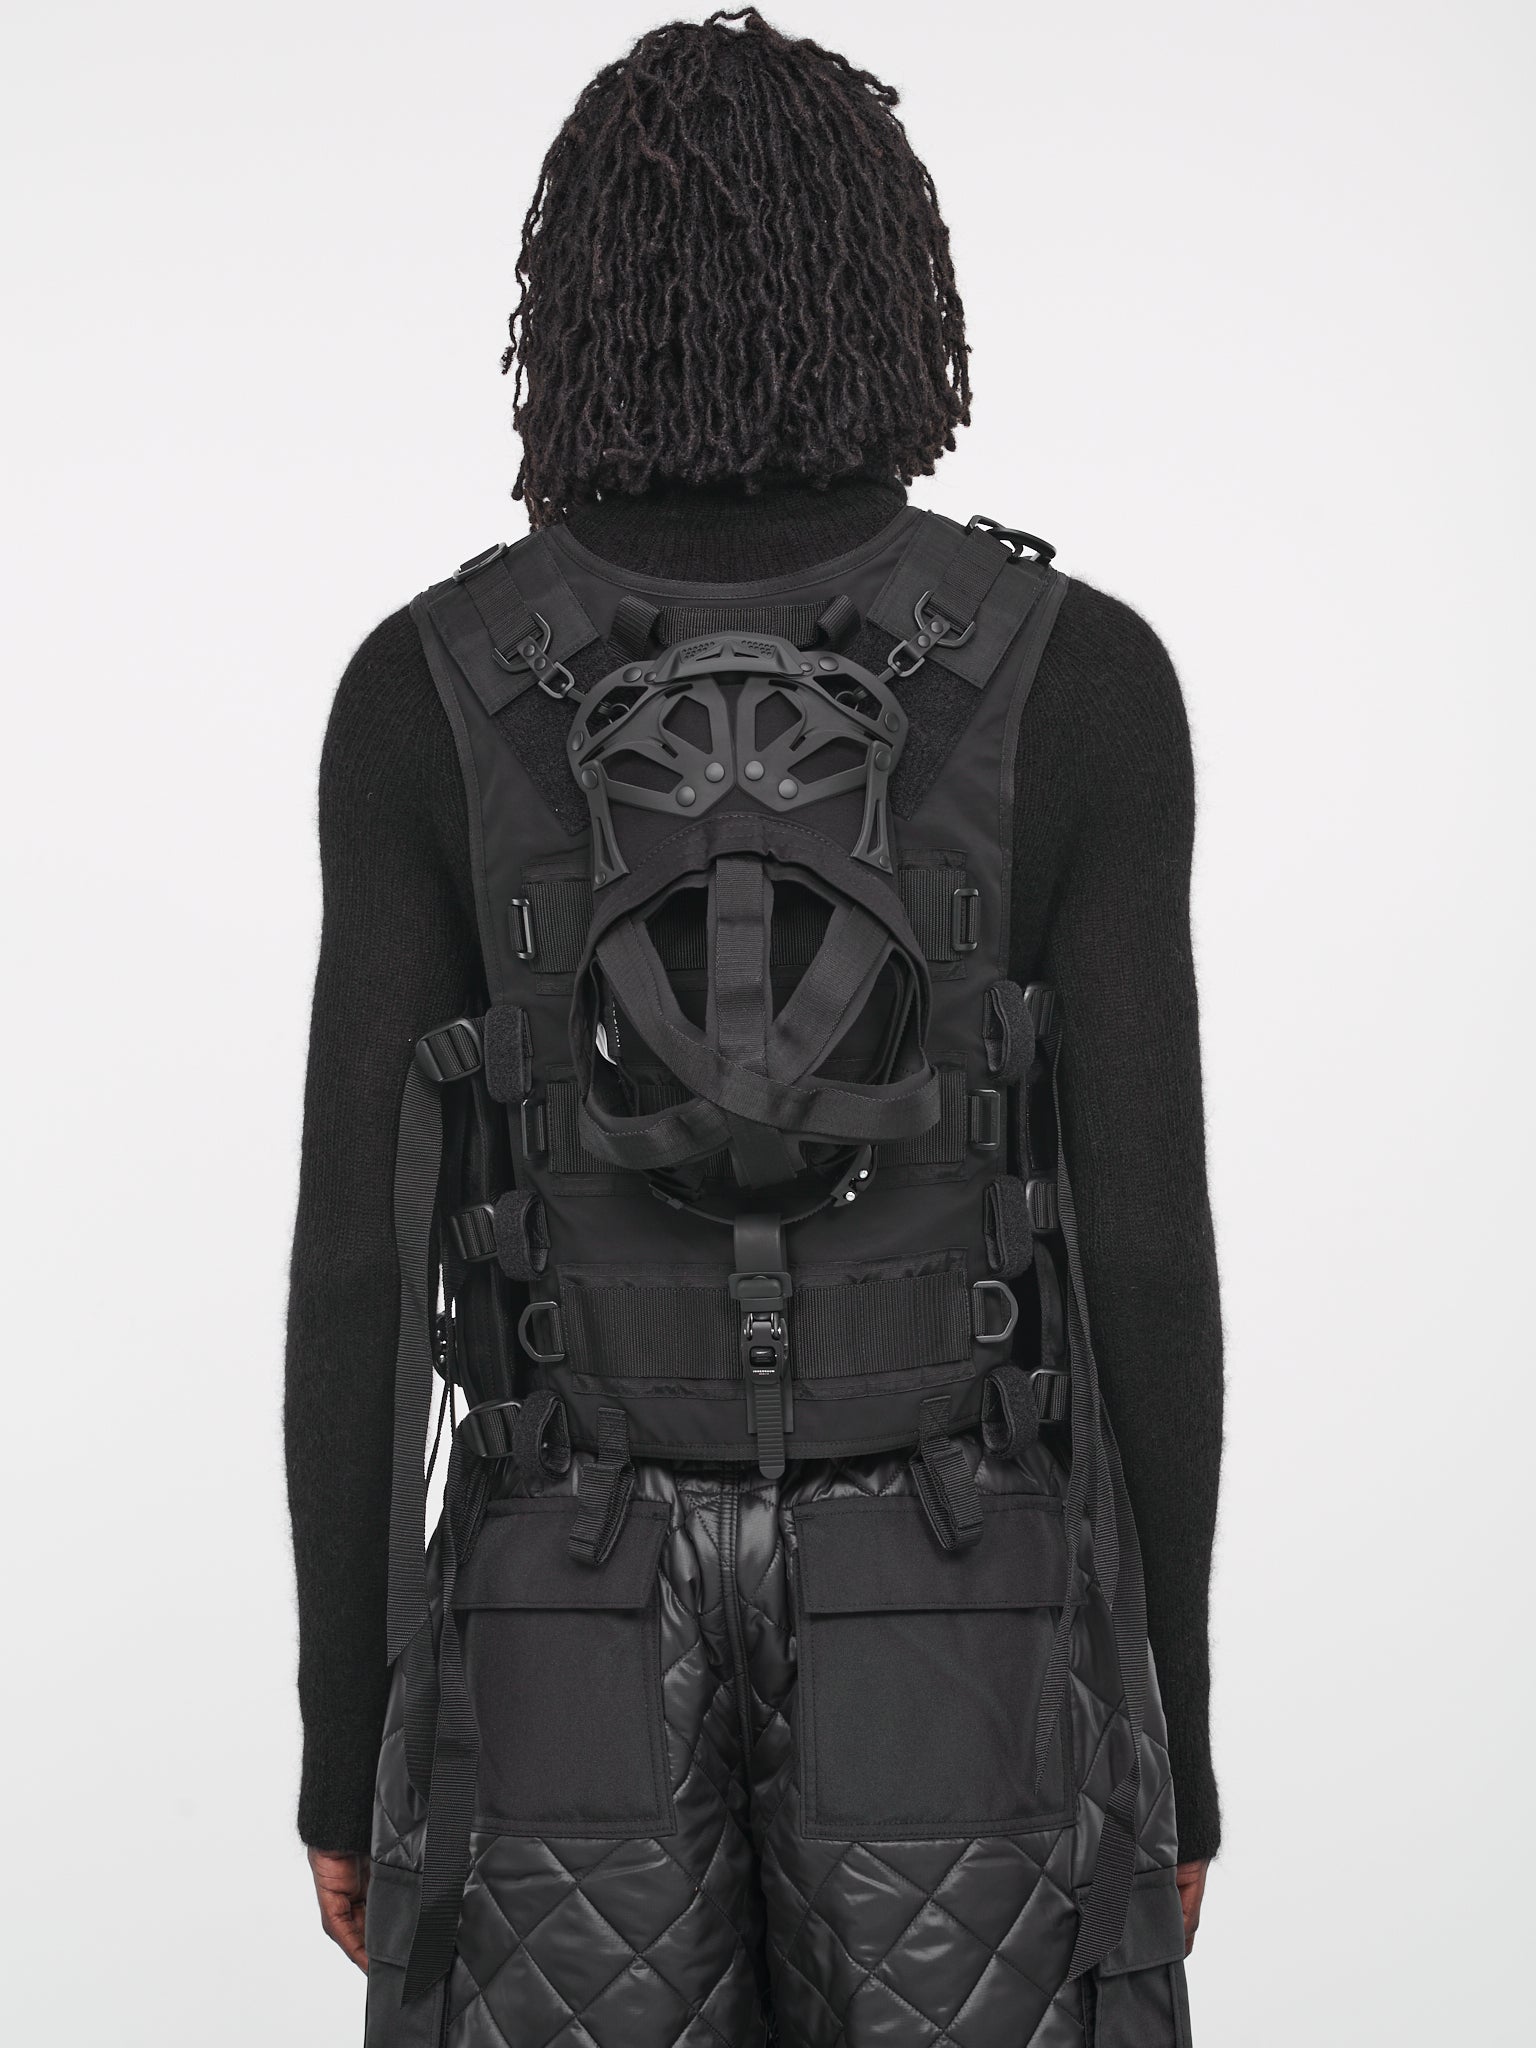 Innerraum Technical Vest (WL-V002-051-BLACK)